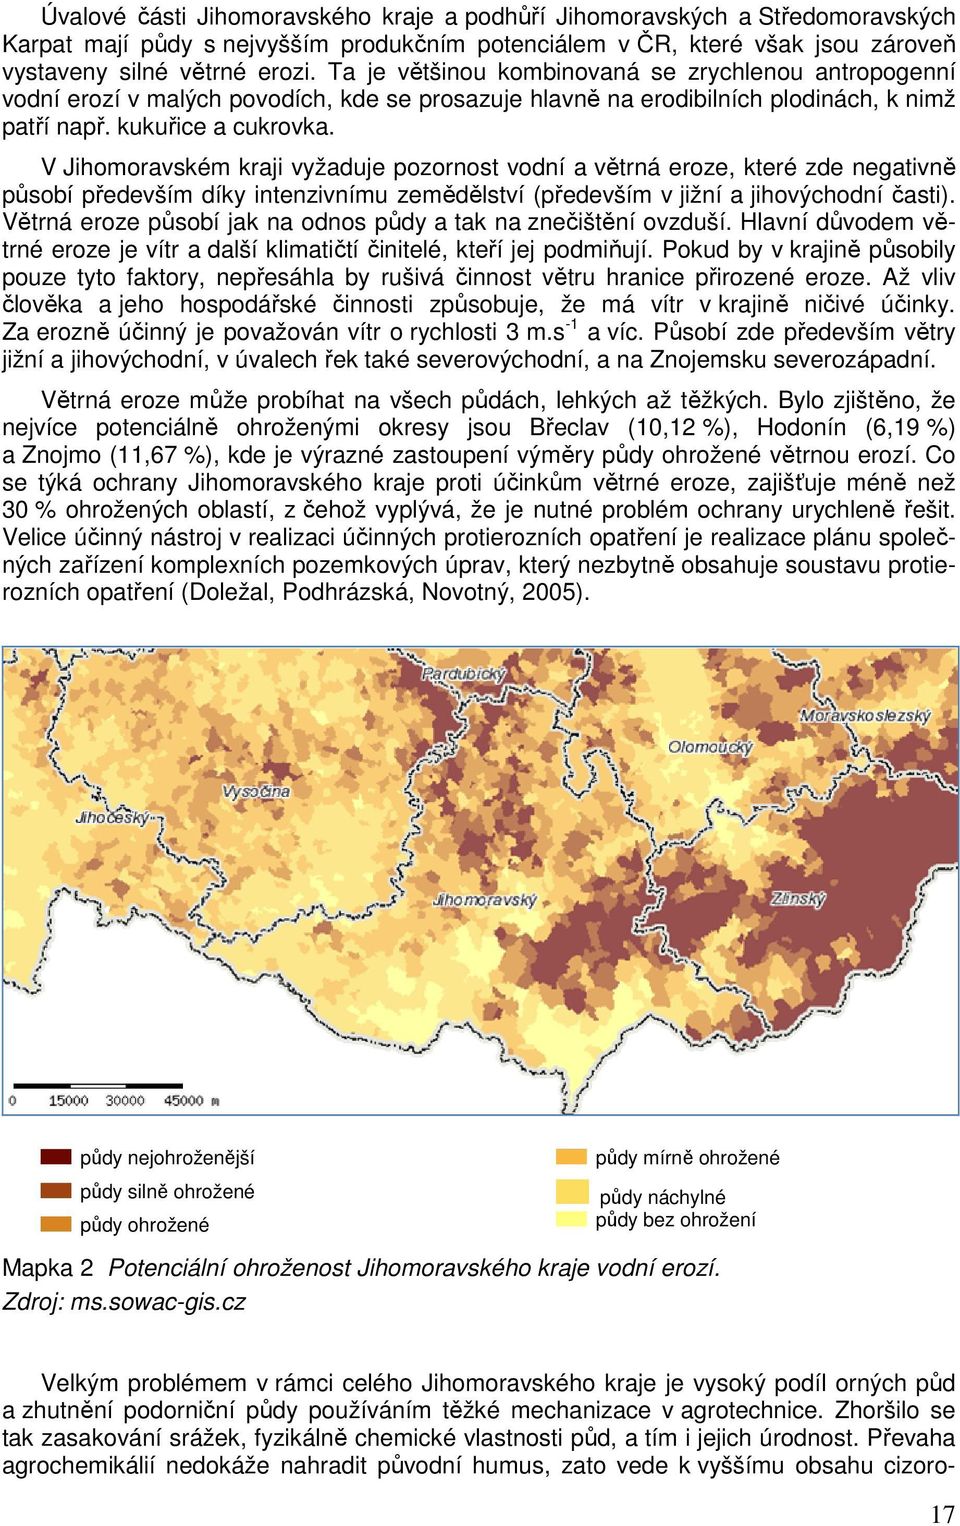 V Jihomoravském kraji vyžaduje pozornost vodní a větrná eroze, které zde negativně působí především díky intenzivnímu zemědělství (především v jižní a jihovýchodní časti).